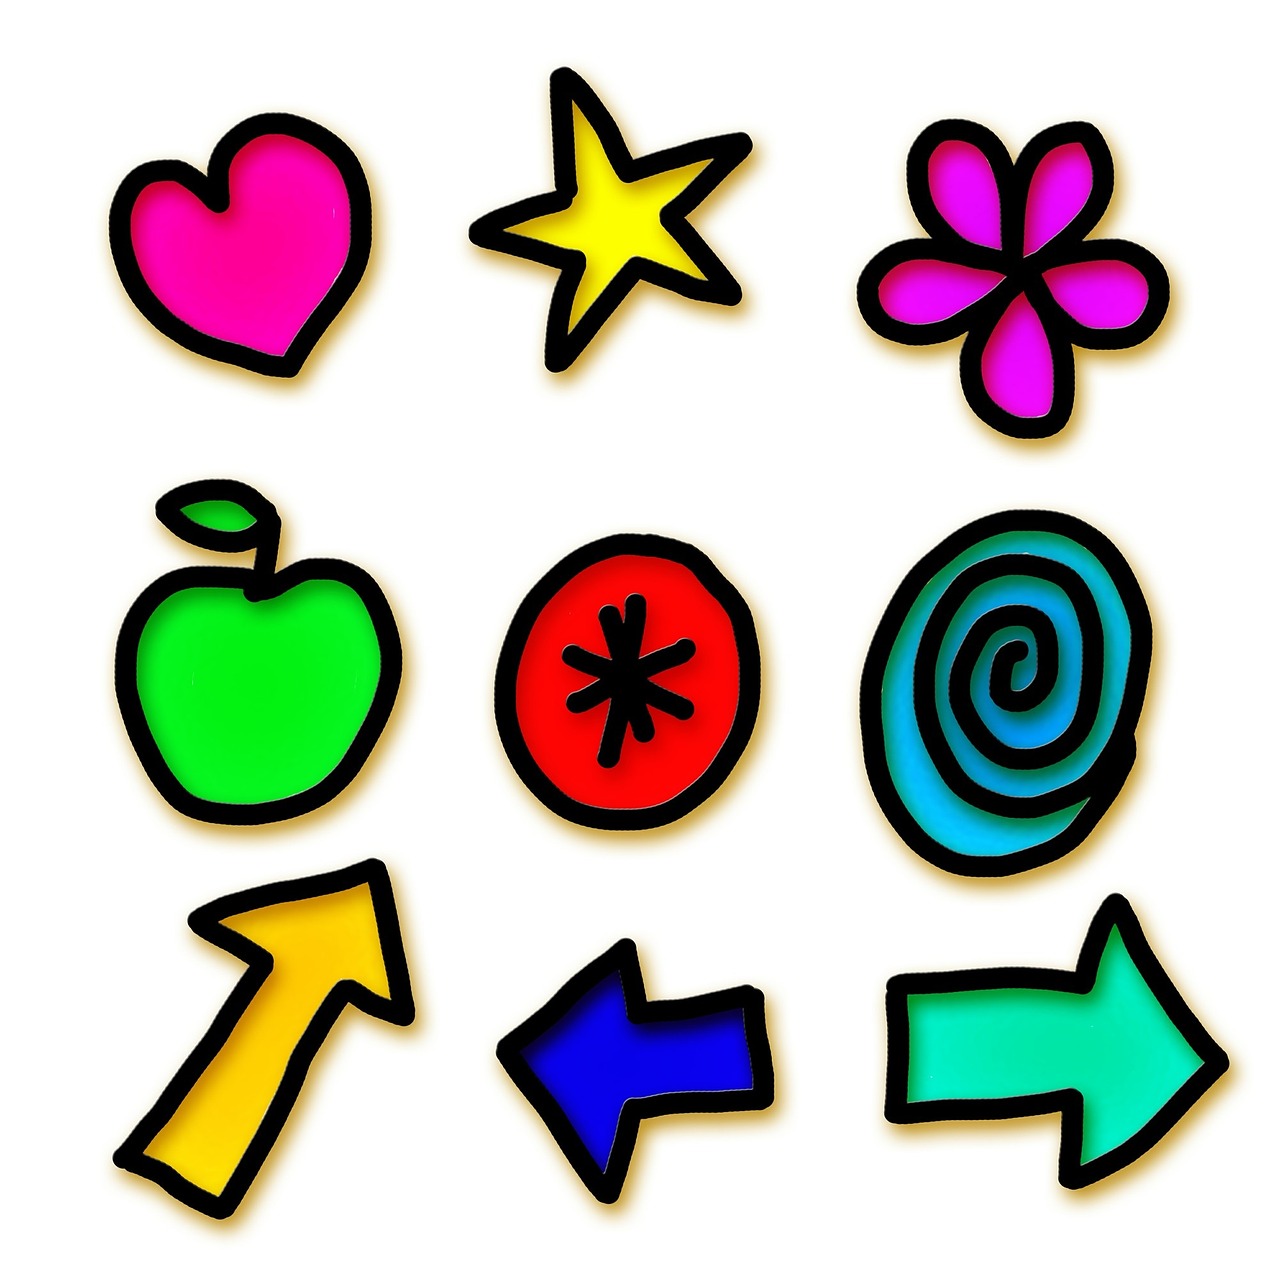 icons symbols shapes free photo